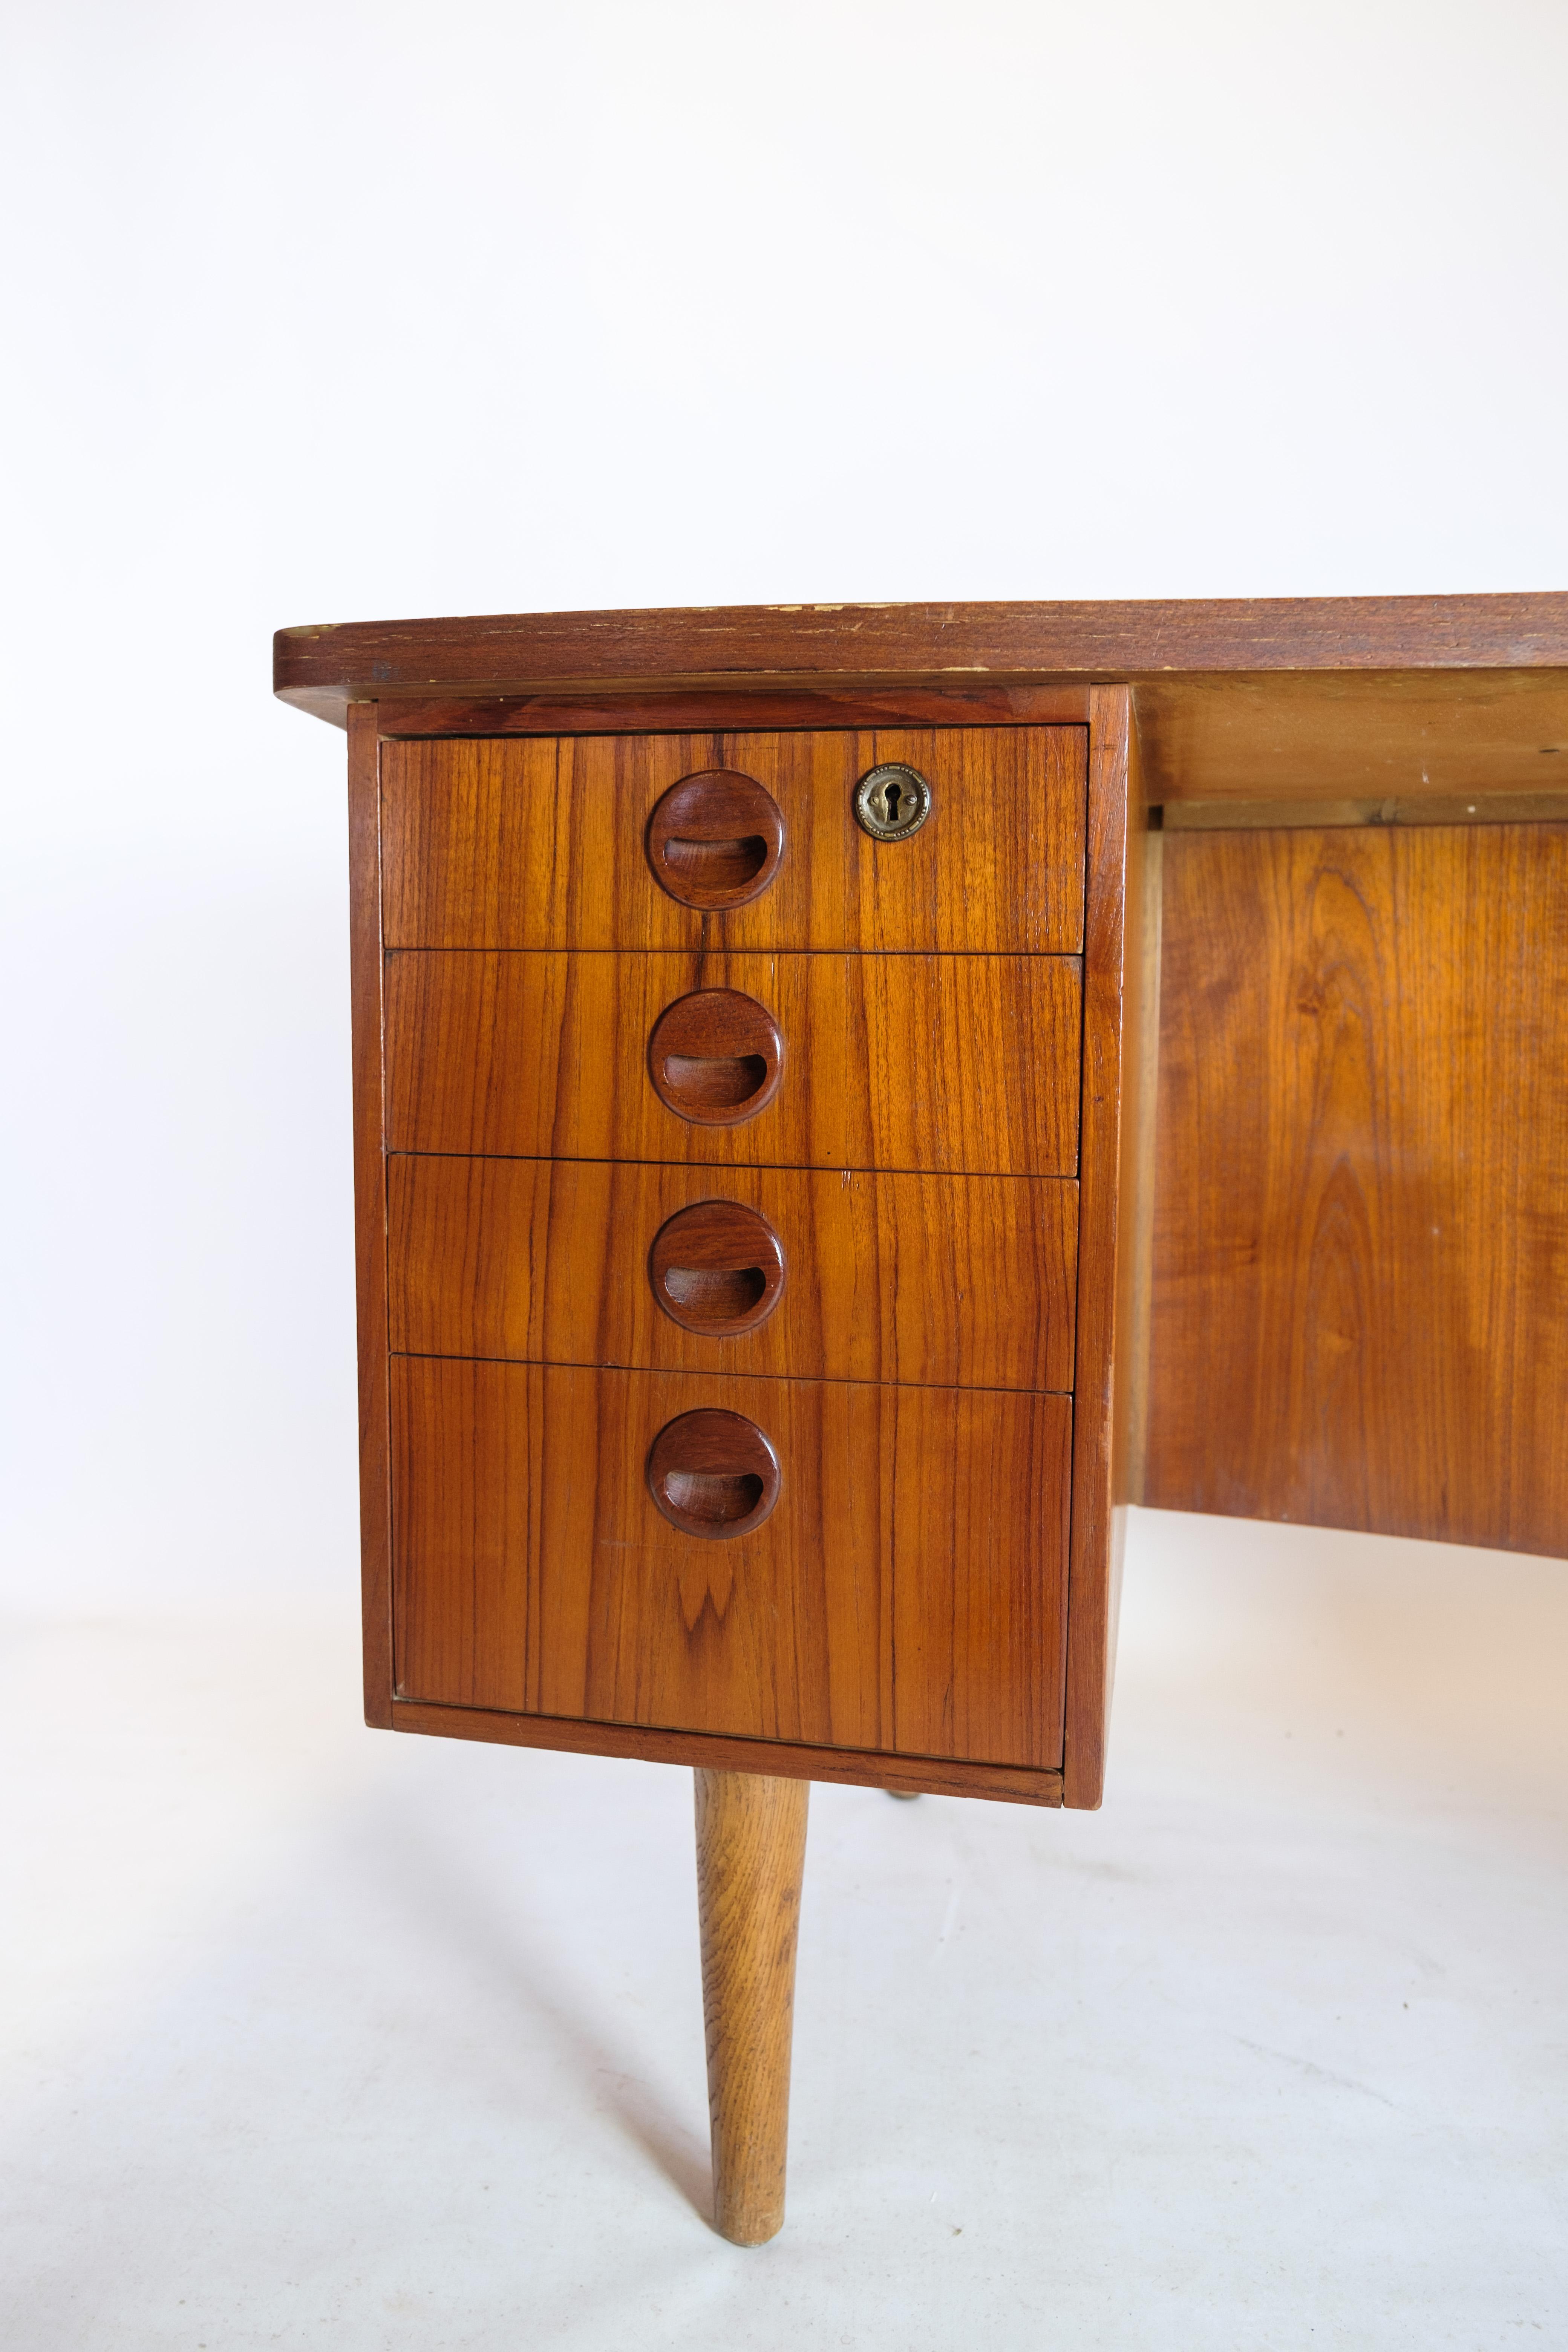 Danish Desk in Teak wood model 54 by Kai Kristiansen and Feldballes furniture from 1954 For Sale